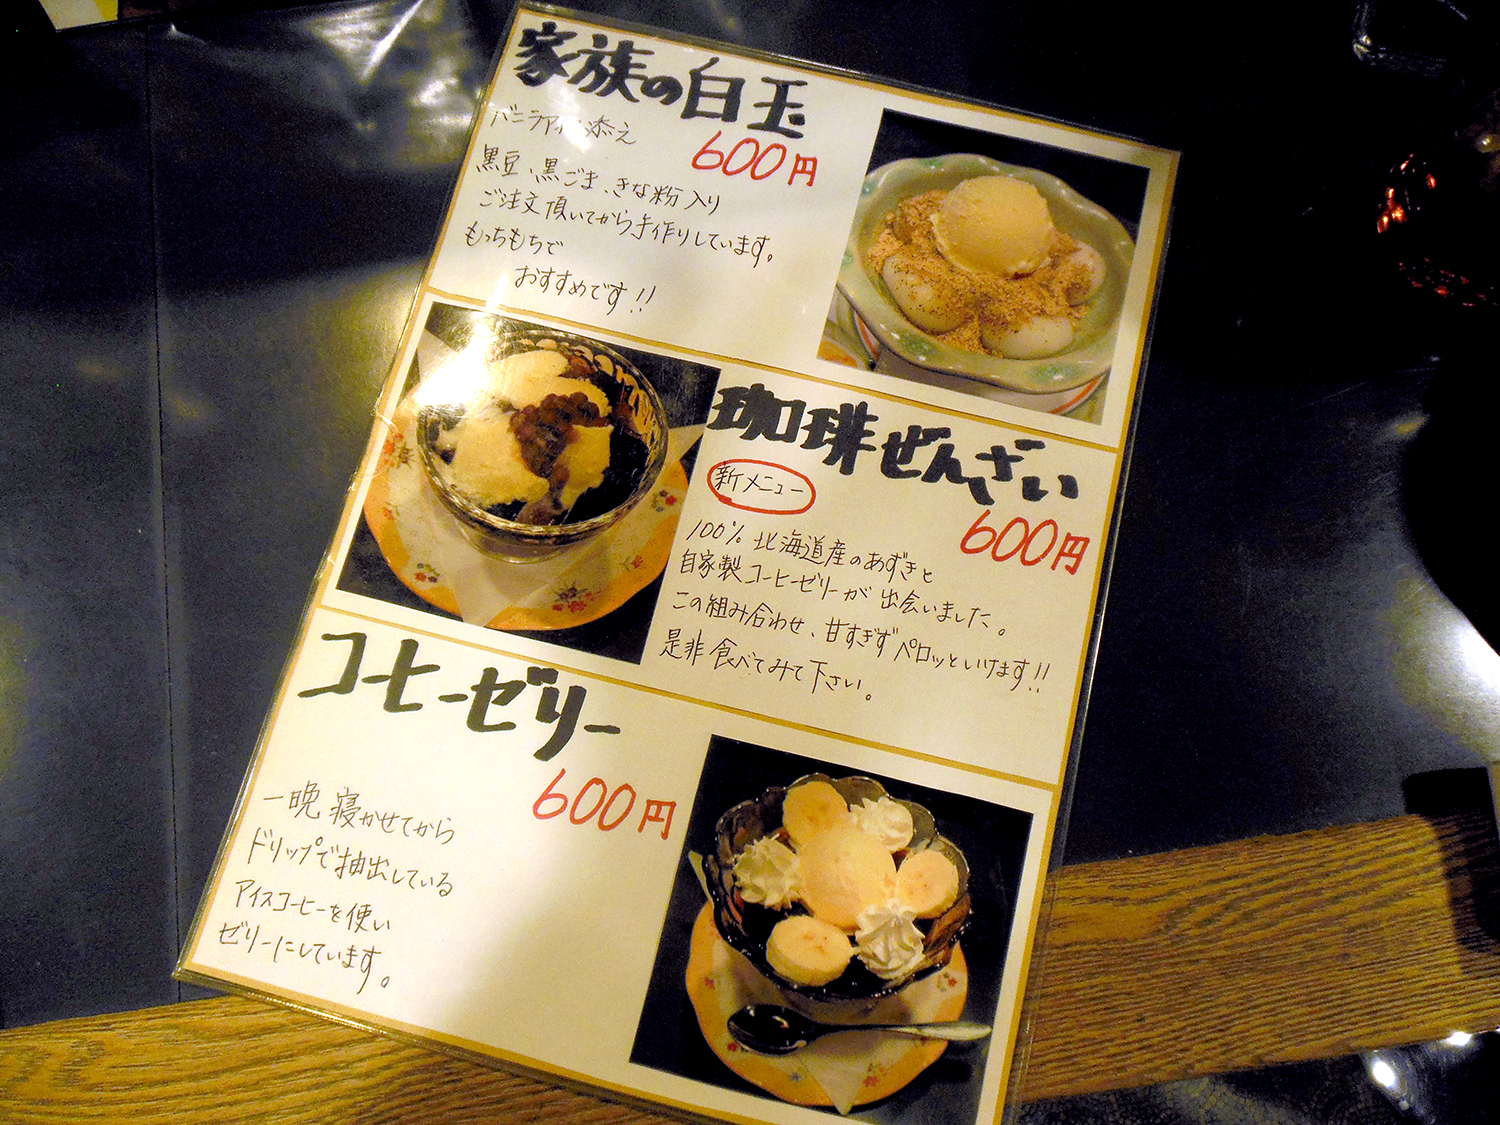 バニラアイスを添えた黒豆・黒ゴマ・きなこ入りの白玉や、北海道産の小豆入りの珈琲ぜんざいのほか、コーヒーゼリーも人気（すべて600円）。